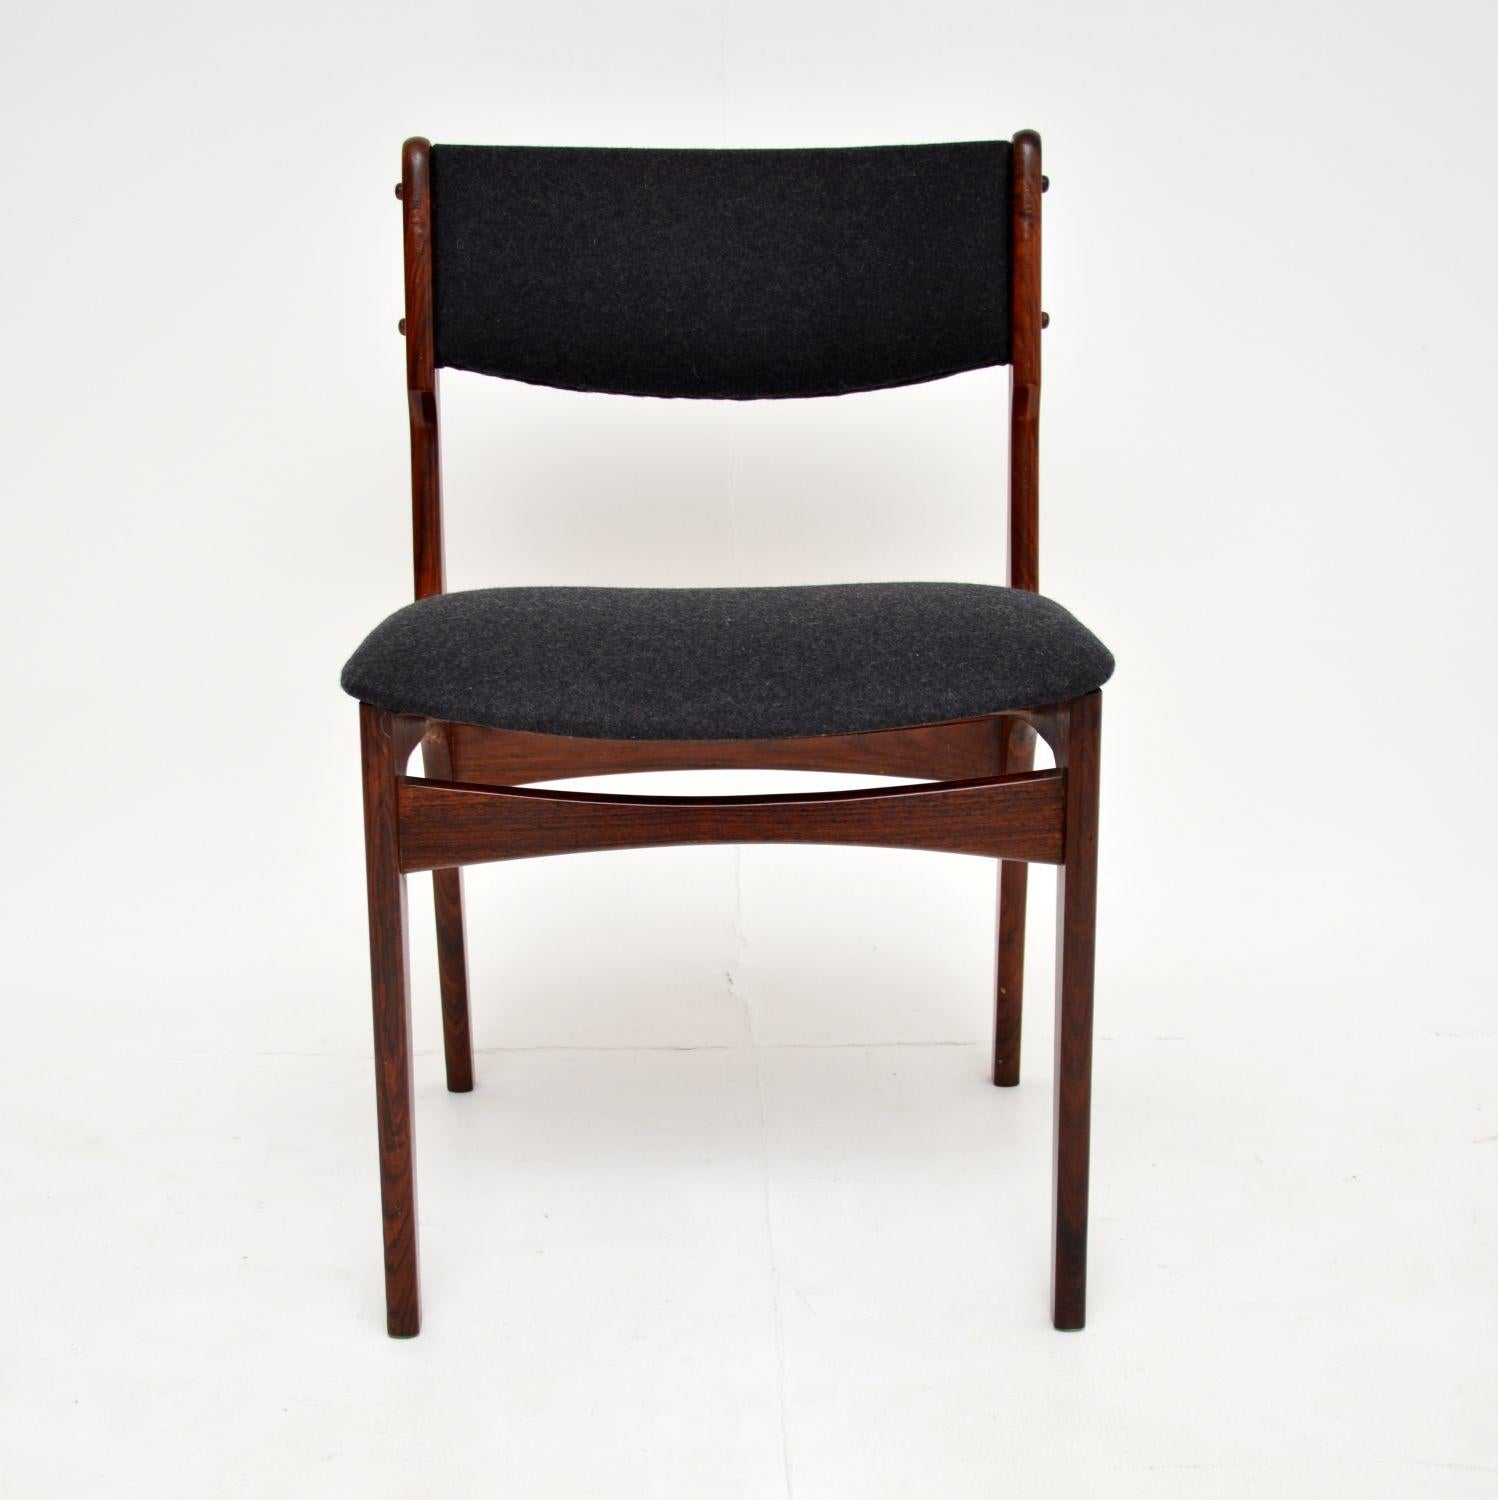 Une chaise danoise élégante et extrêmement bien fabriquée. Conçue par Erik Buch, elle a été fabriquée au Danemark dans les années 1960.

La qualité est superbe, c'est un produit très bien construit, confortable et qui offre un bon soutien. Il est